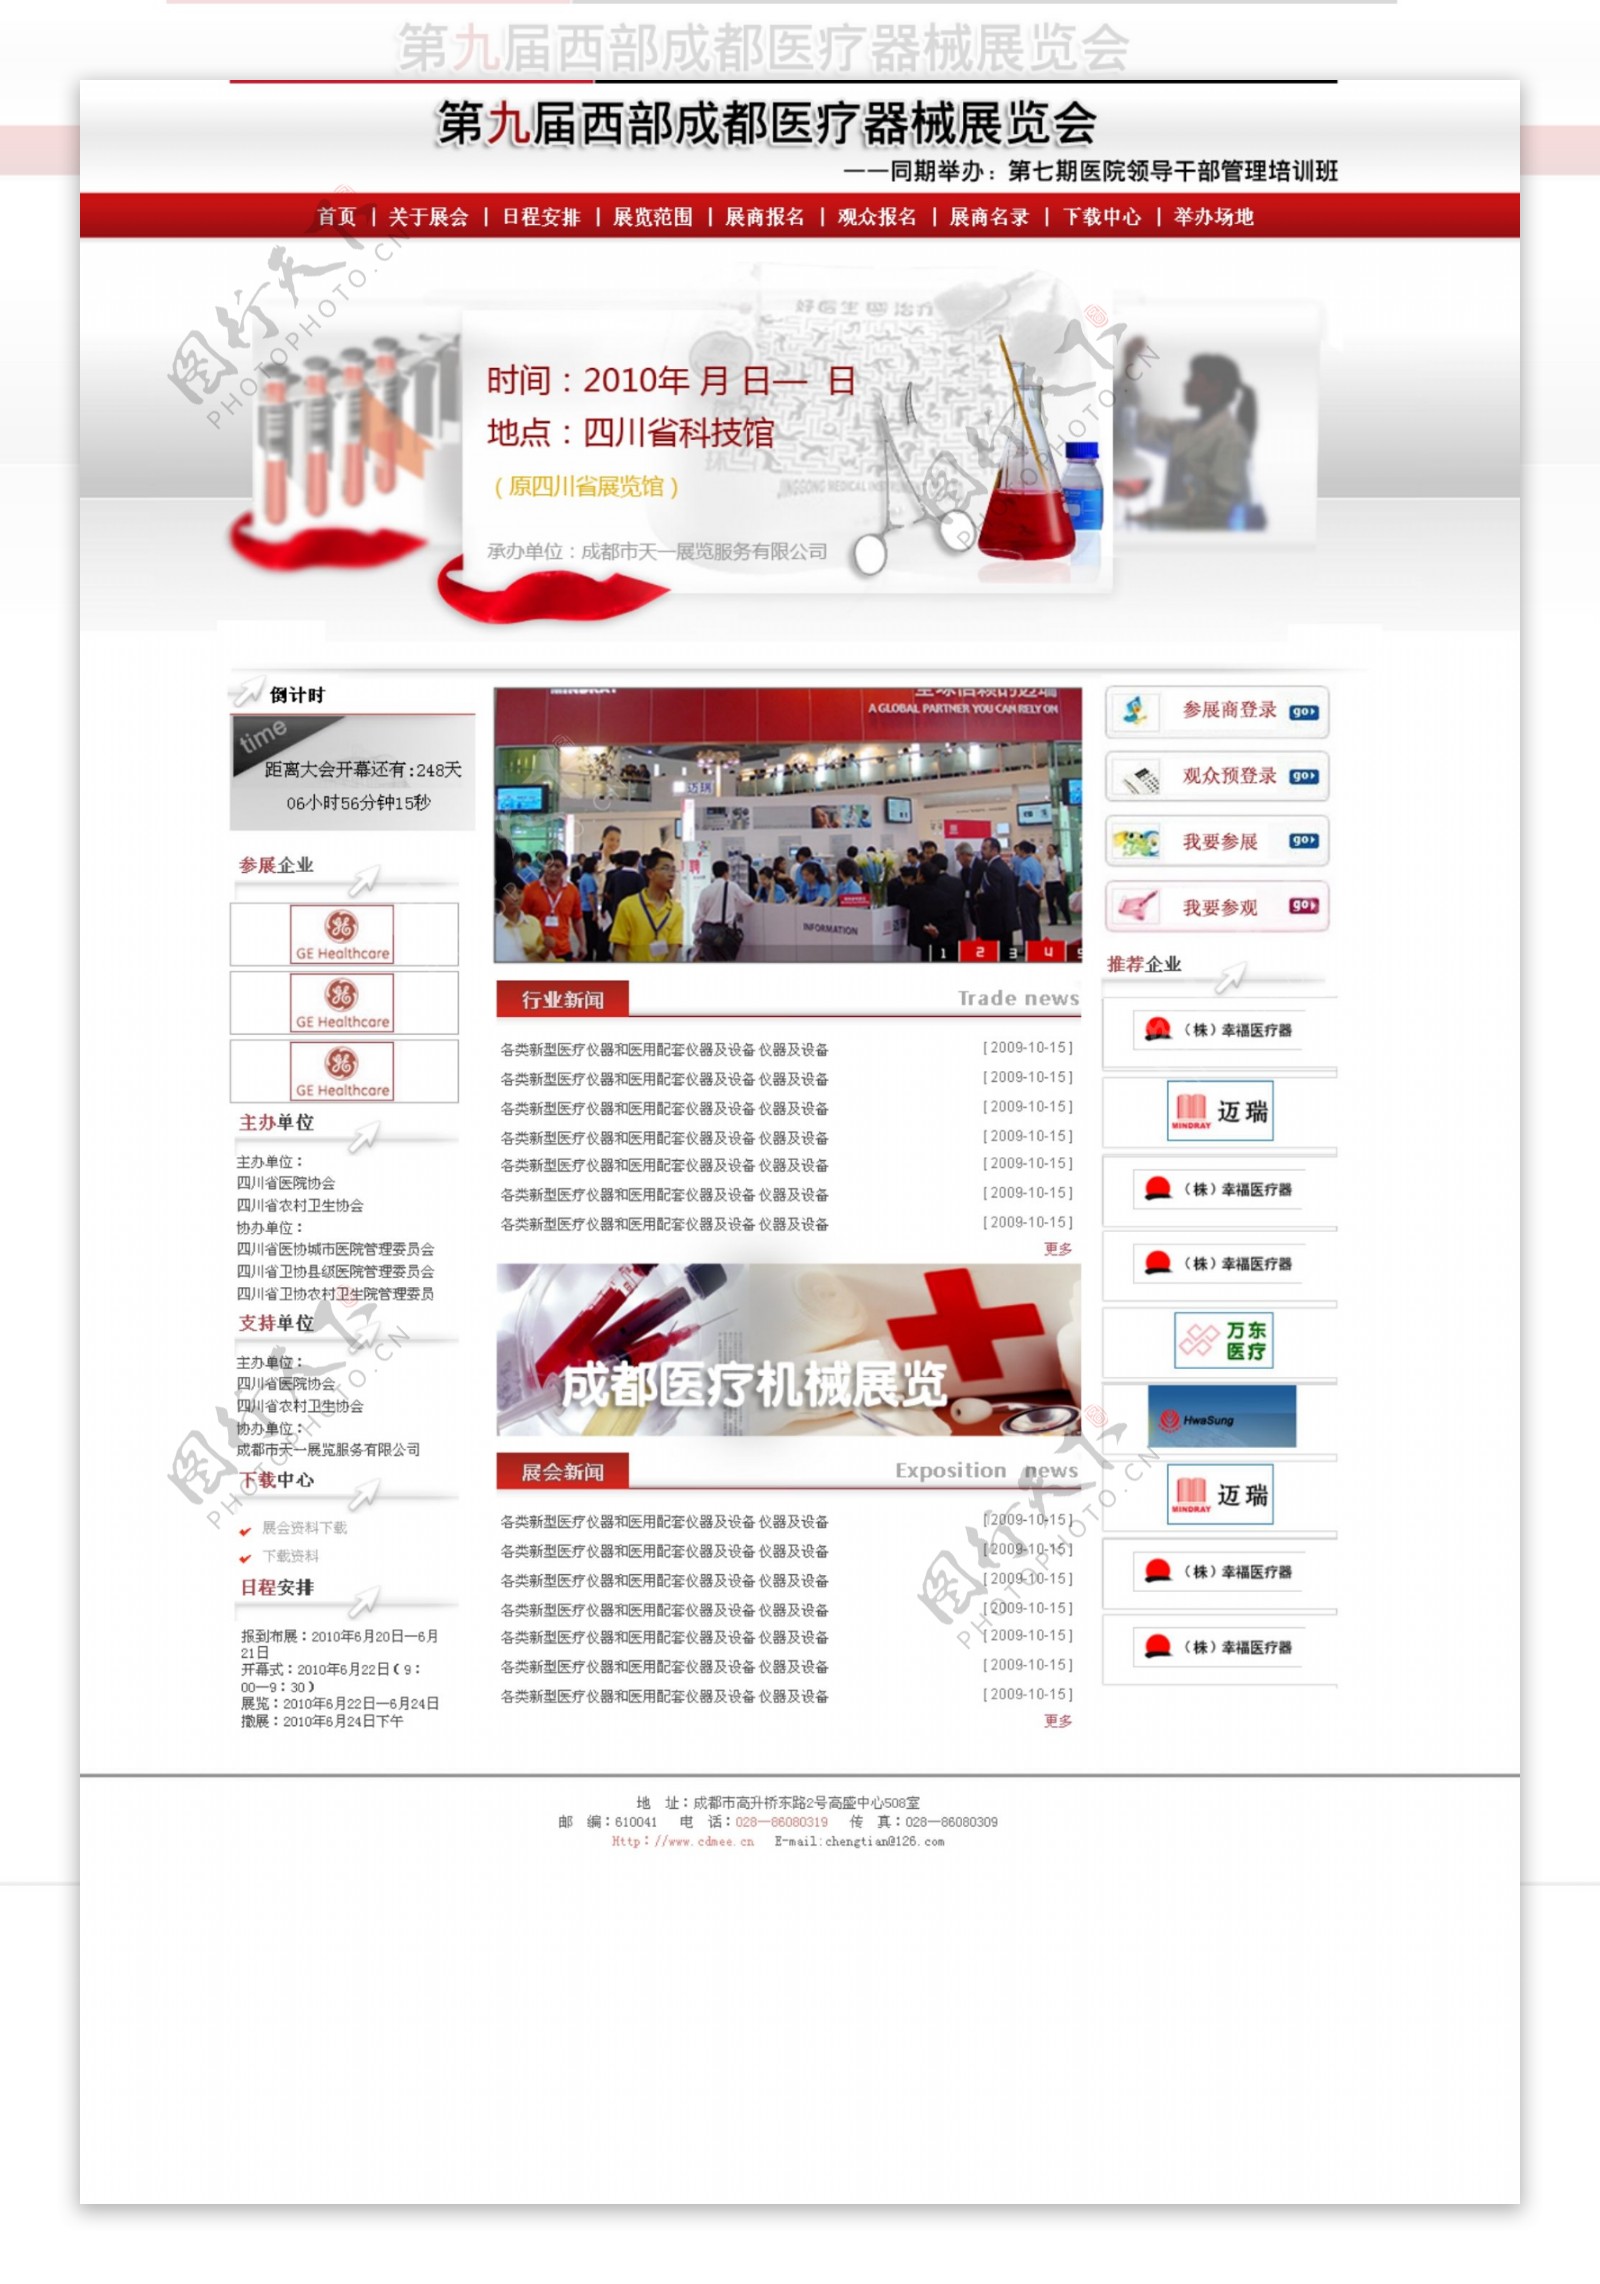 展会展览红色模板网页模板大气简单三列红灰色模板医疗化学模板图片